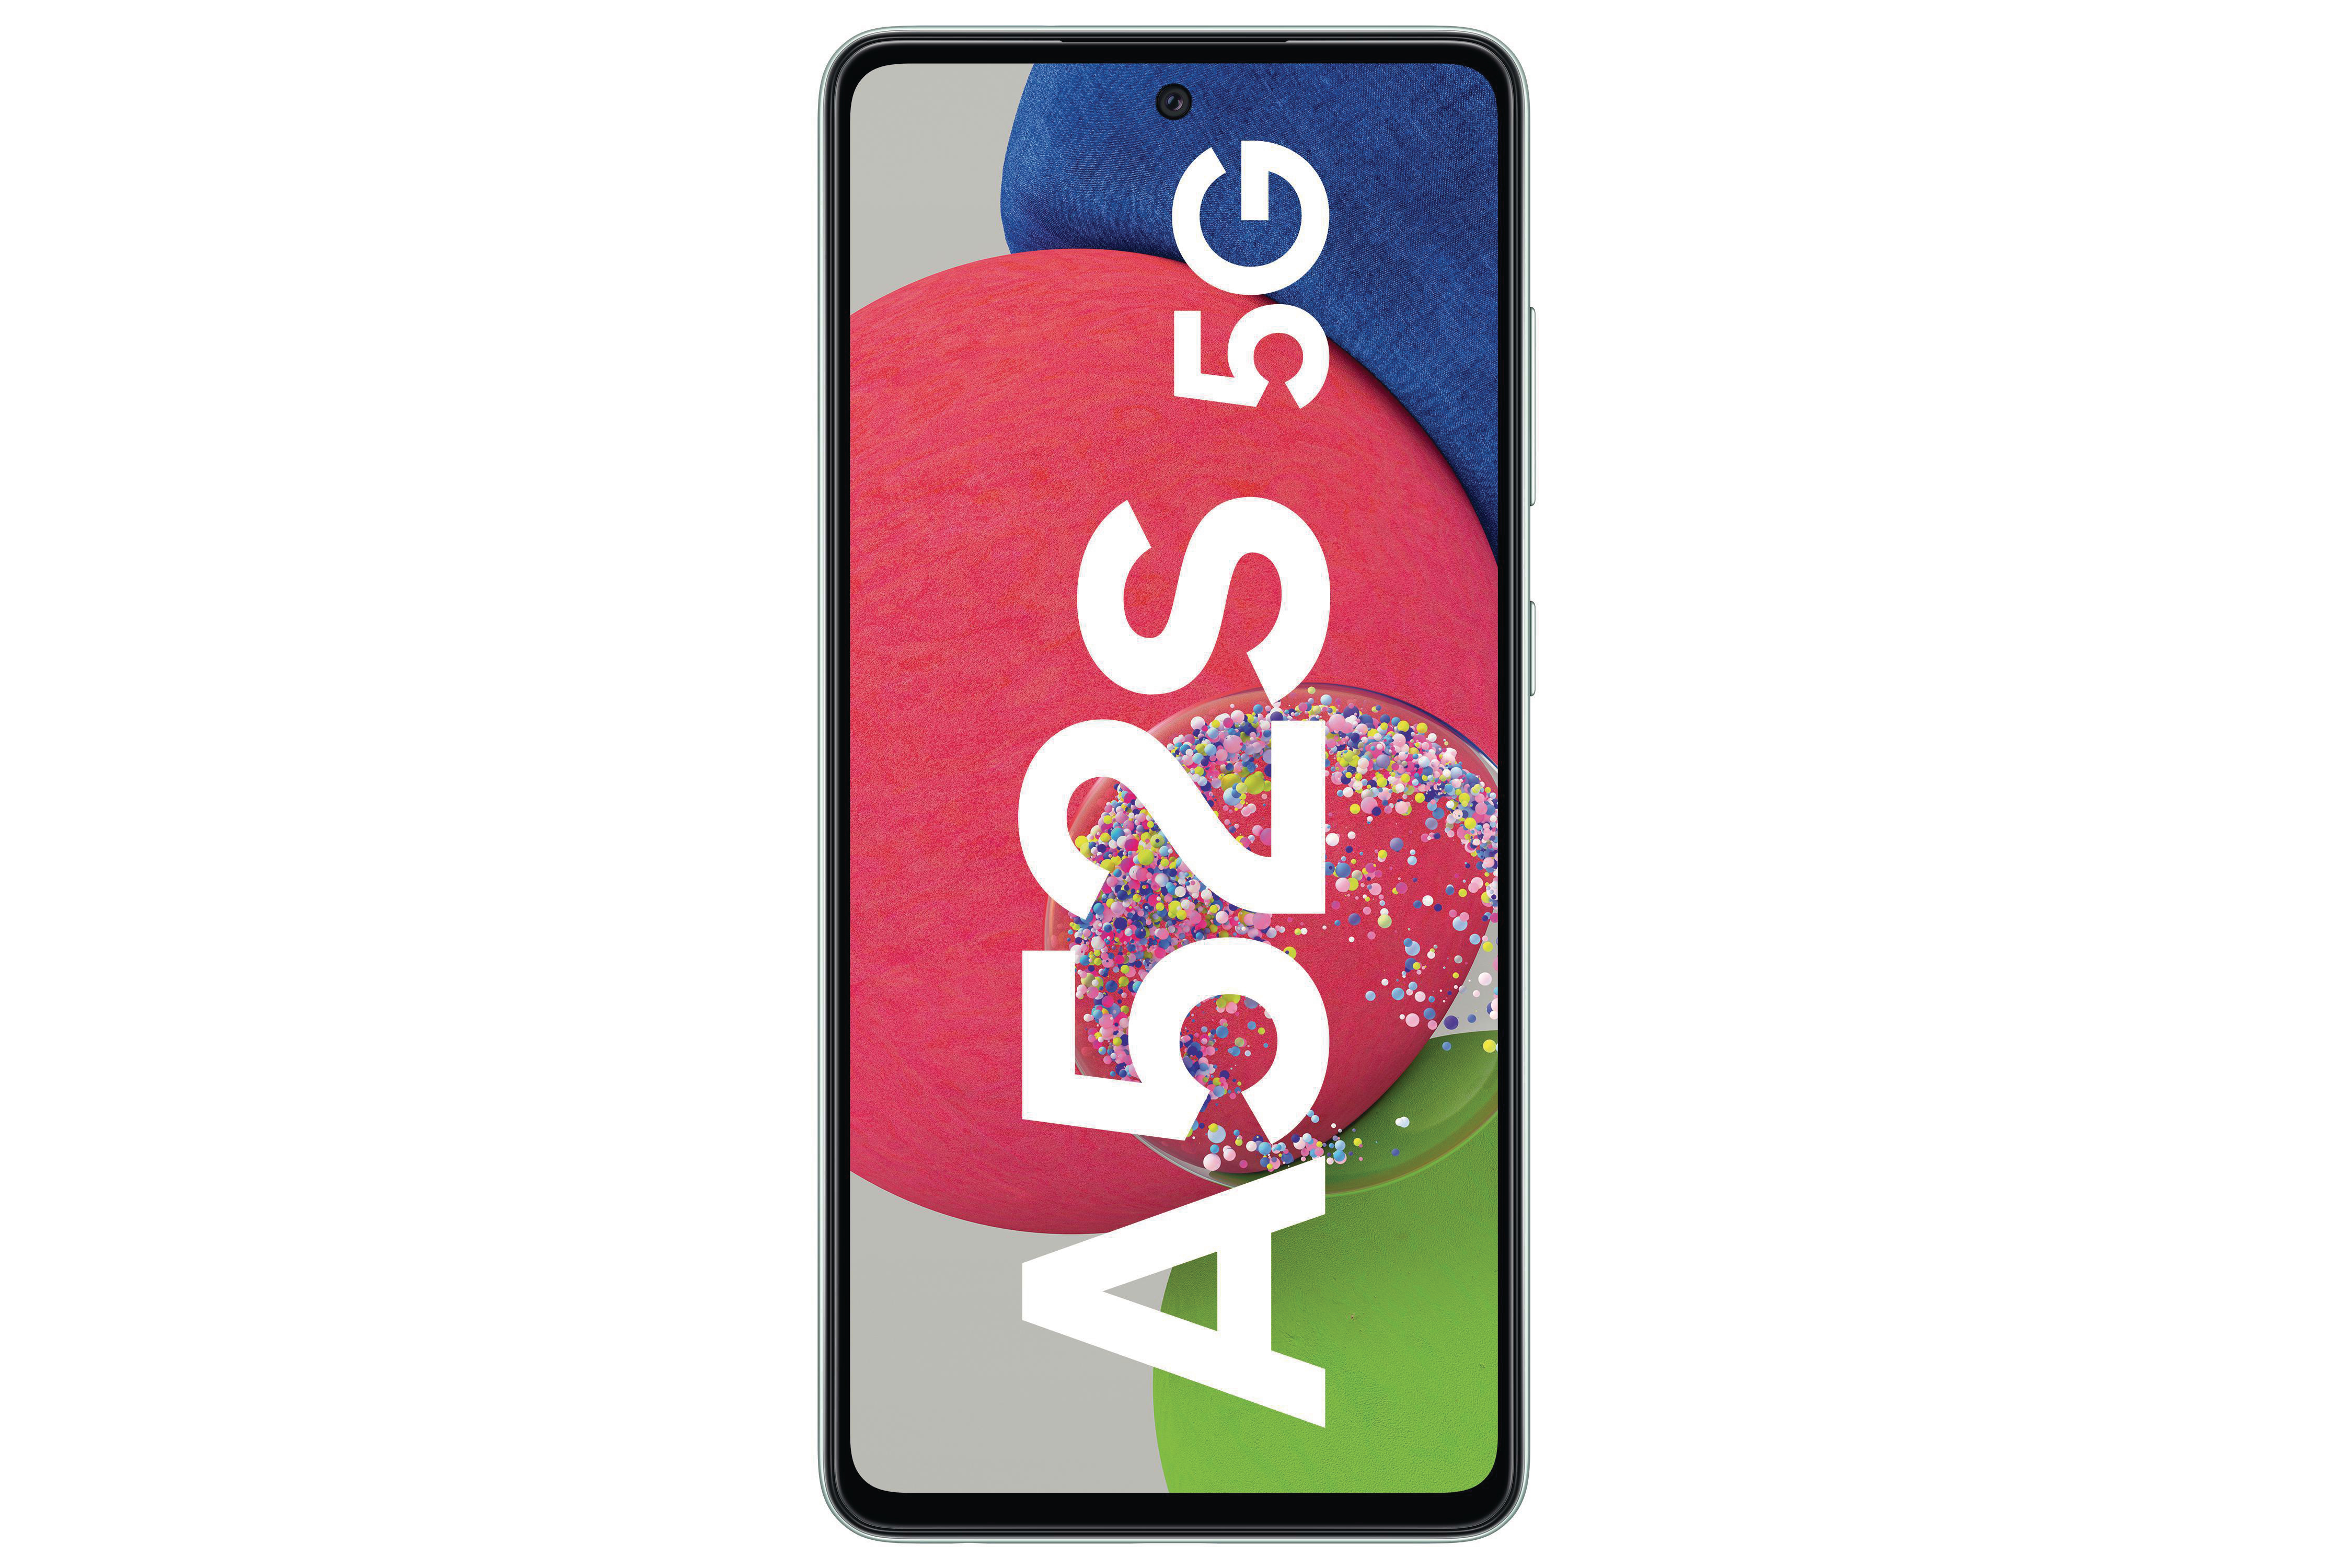 SAMSUNG Galaxy GB Dual Green Awesome SIM 5G 128 A52s